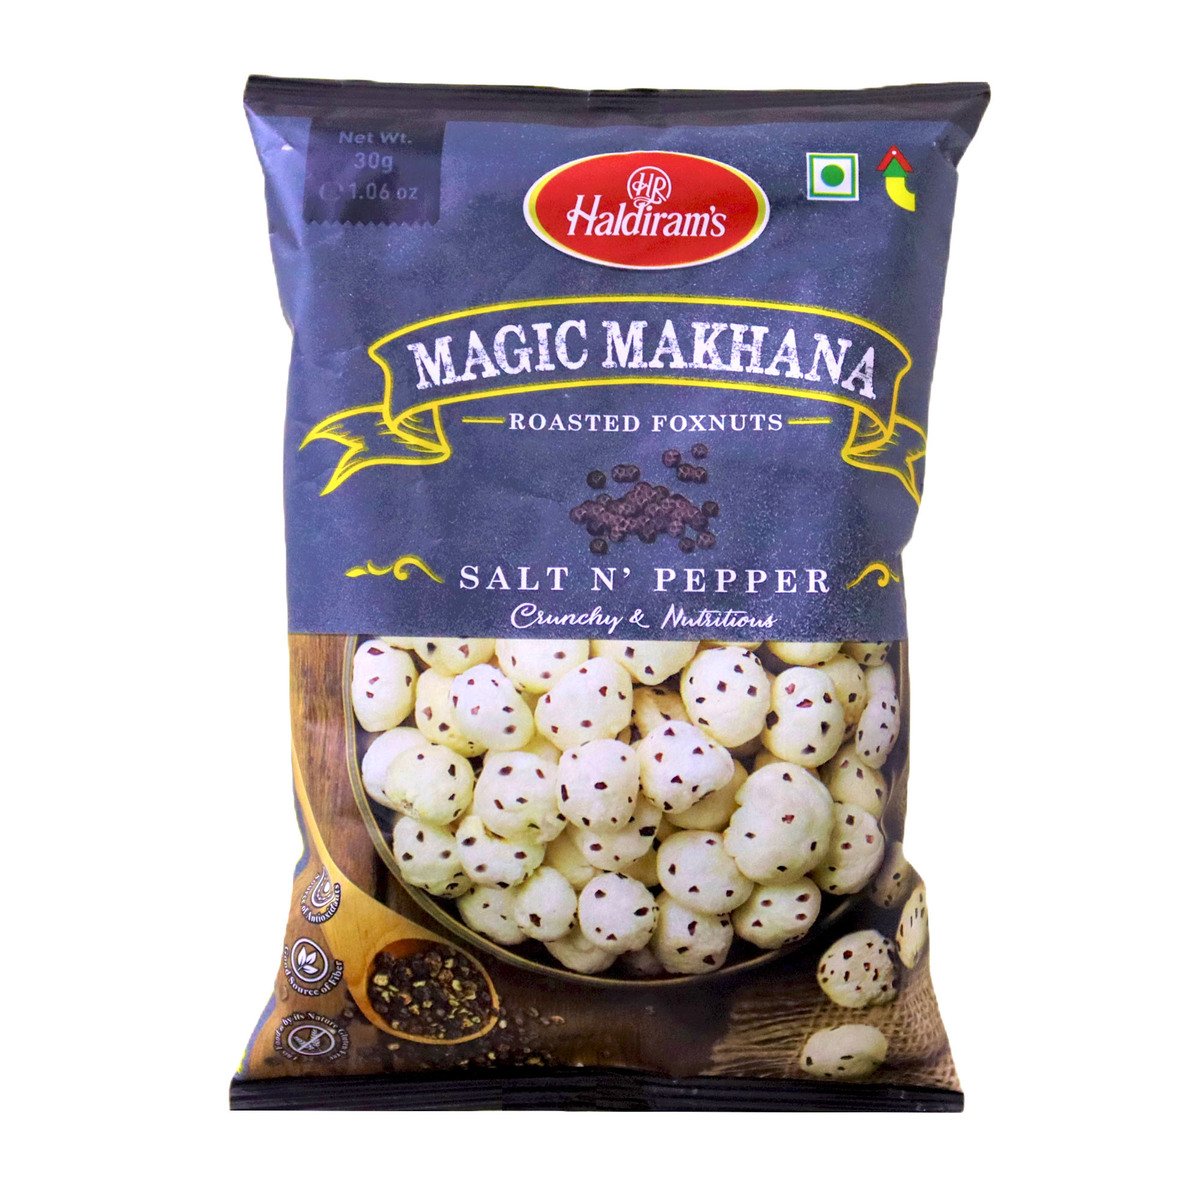 Buy Haldirams Magic Makhana Roasted Foxnuts Salt N Pepper 30 g Online at Best Price | Indian Savouries | Lulu UAE in UAE